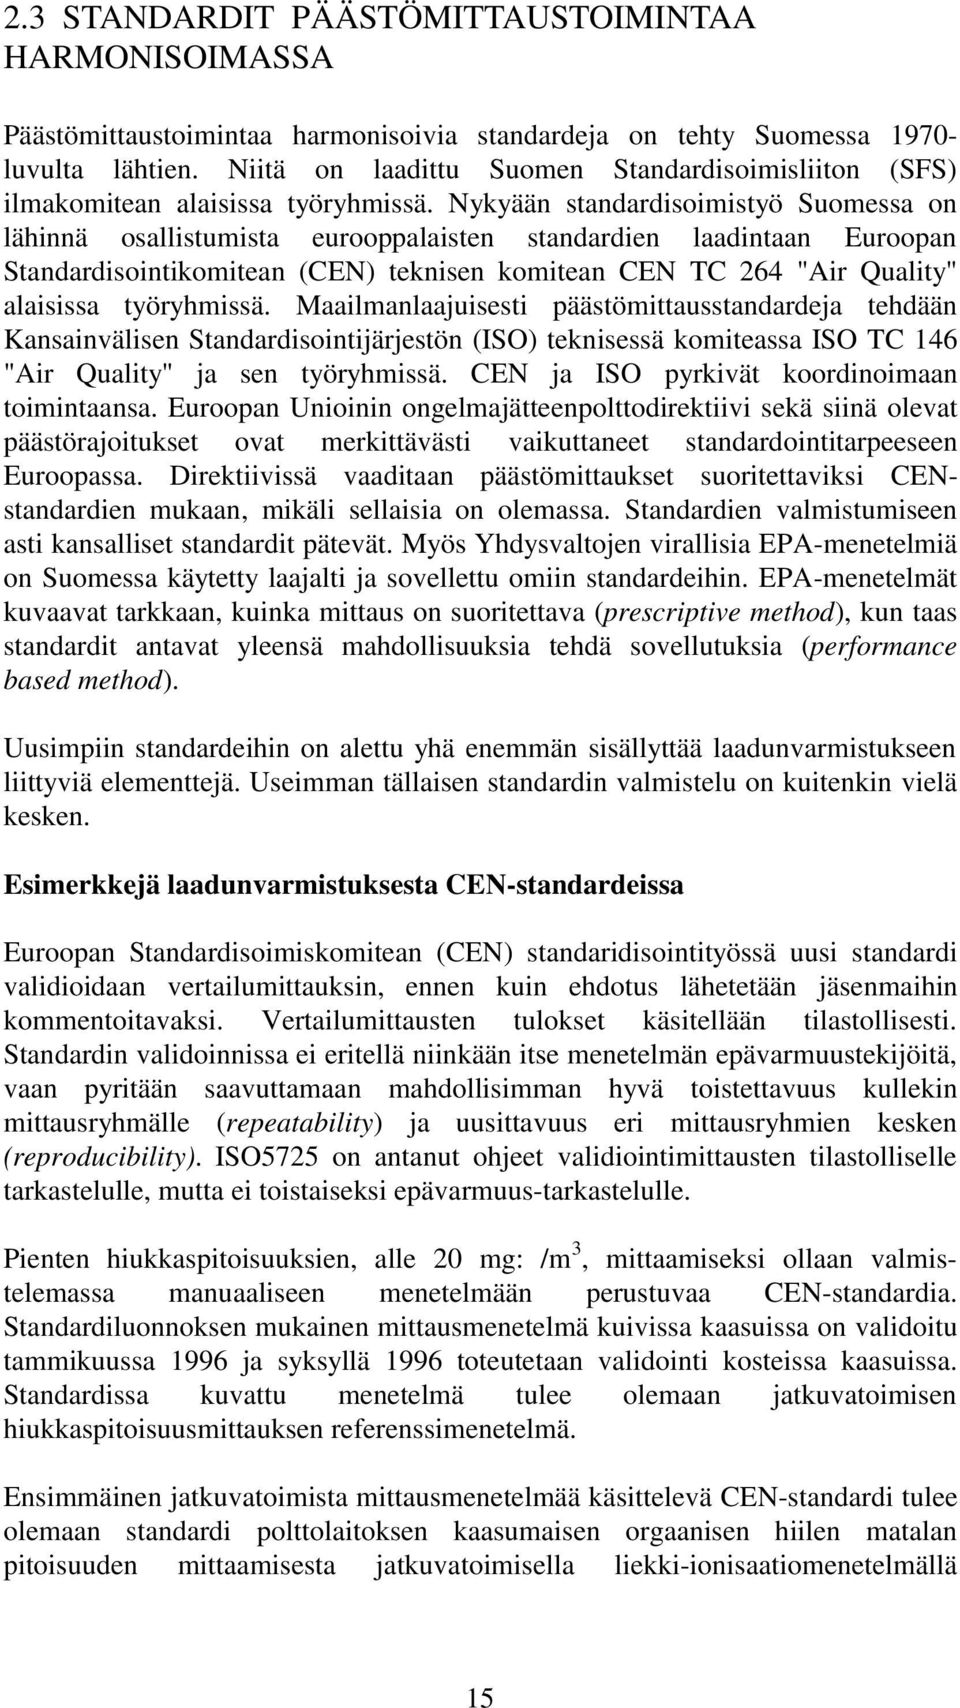 Nykyään standardisoimistyö Suomessa on lähinnä osallistumista eurooppalaisten standardien laadintaan Euroopan Standardisointikomitean (CEN) teknisen komitean CEN TC 264 "Air Quality" alaisissa